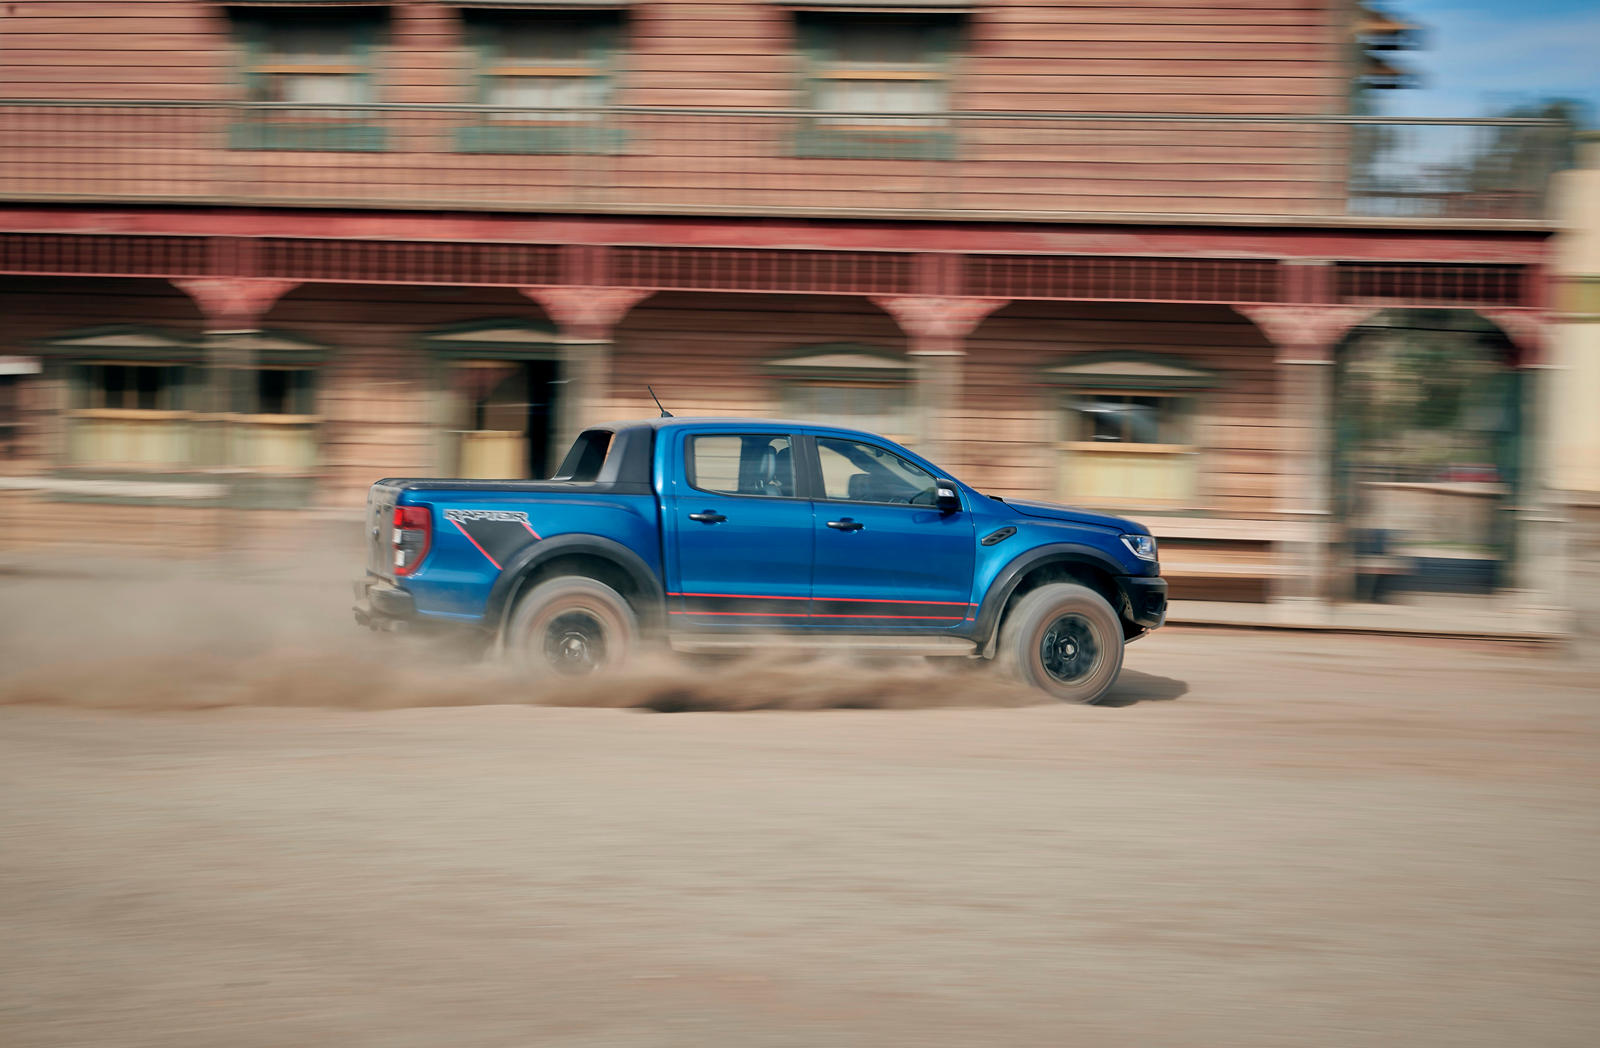 По сравнению с обычным Ranger, включая тот, который продается в США, Ranger Raptor, разработанный Ford Performance, имеет колею на 15 см шире и дорожный просвет на 5 см выше.